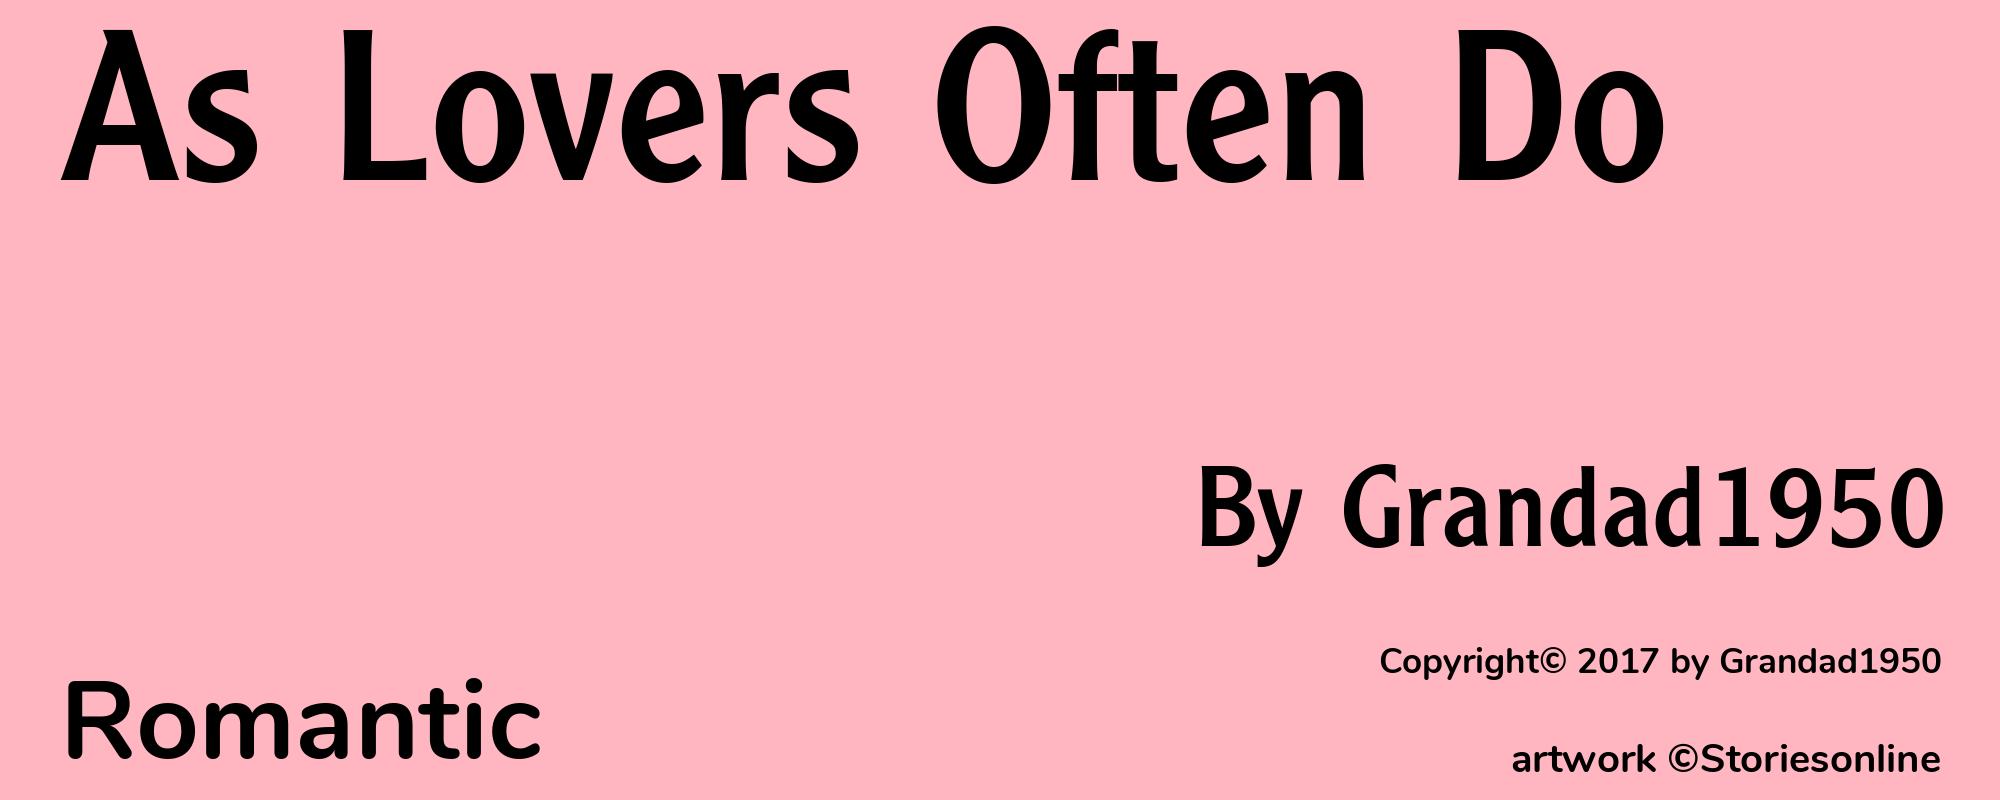 As Lovers Often Do - Cover